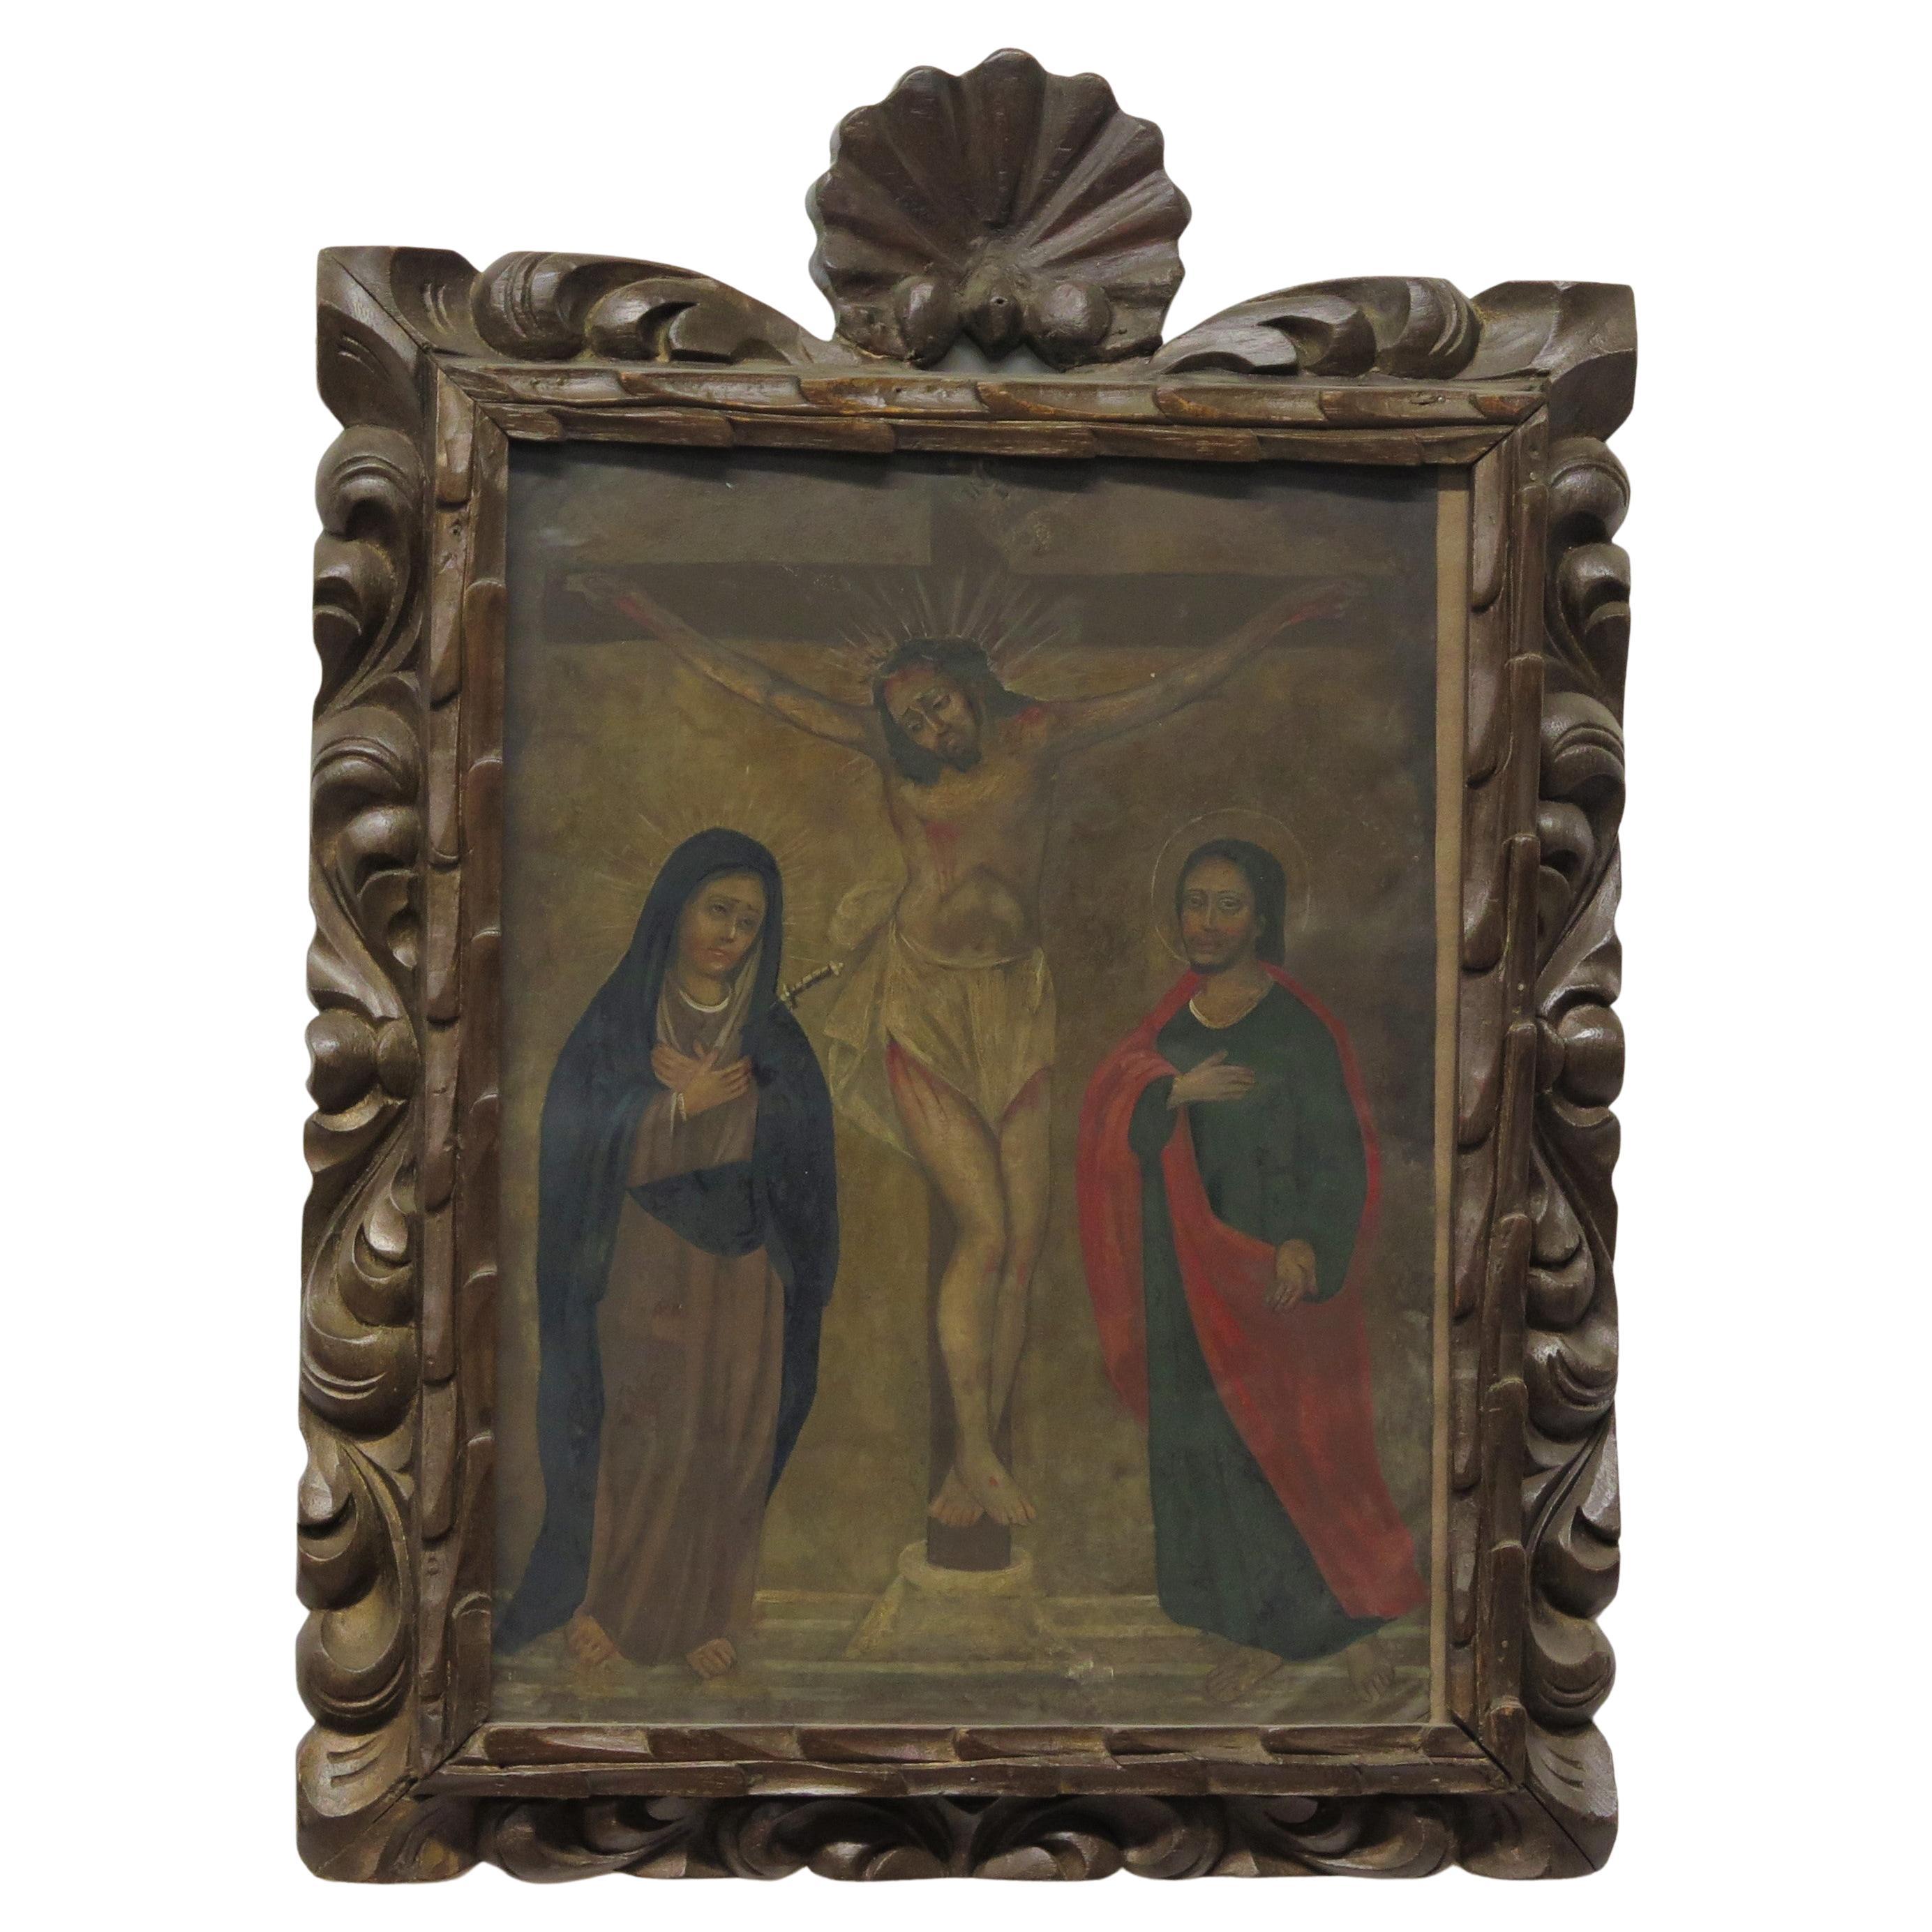 Spanisches Retablo aus der Kolonialzeit "The Crucifixion" mit der Jungfrau Maria und dem Heiligen Johannes